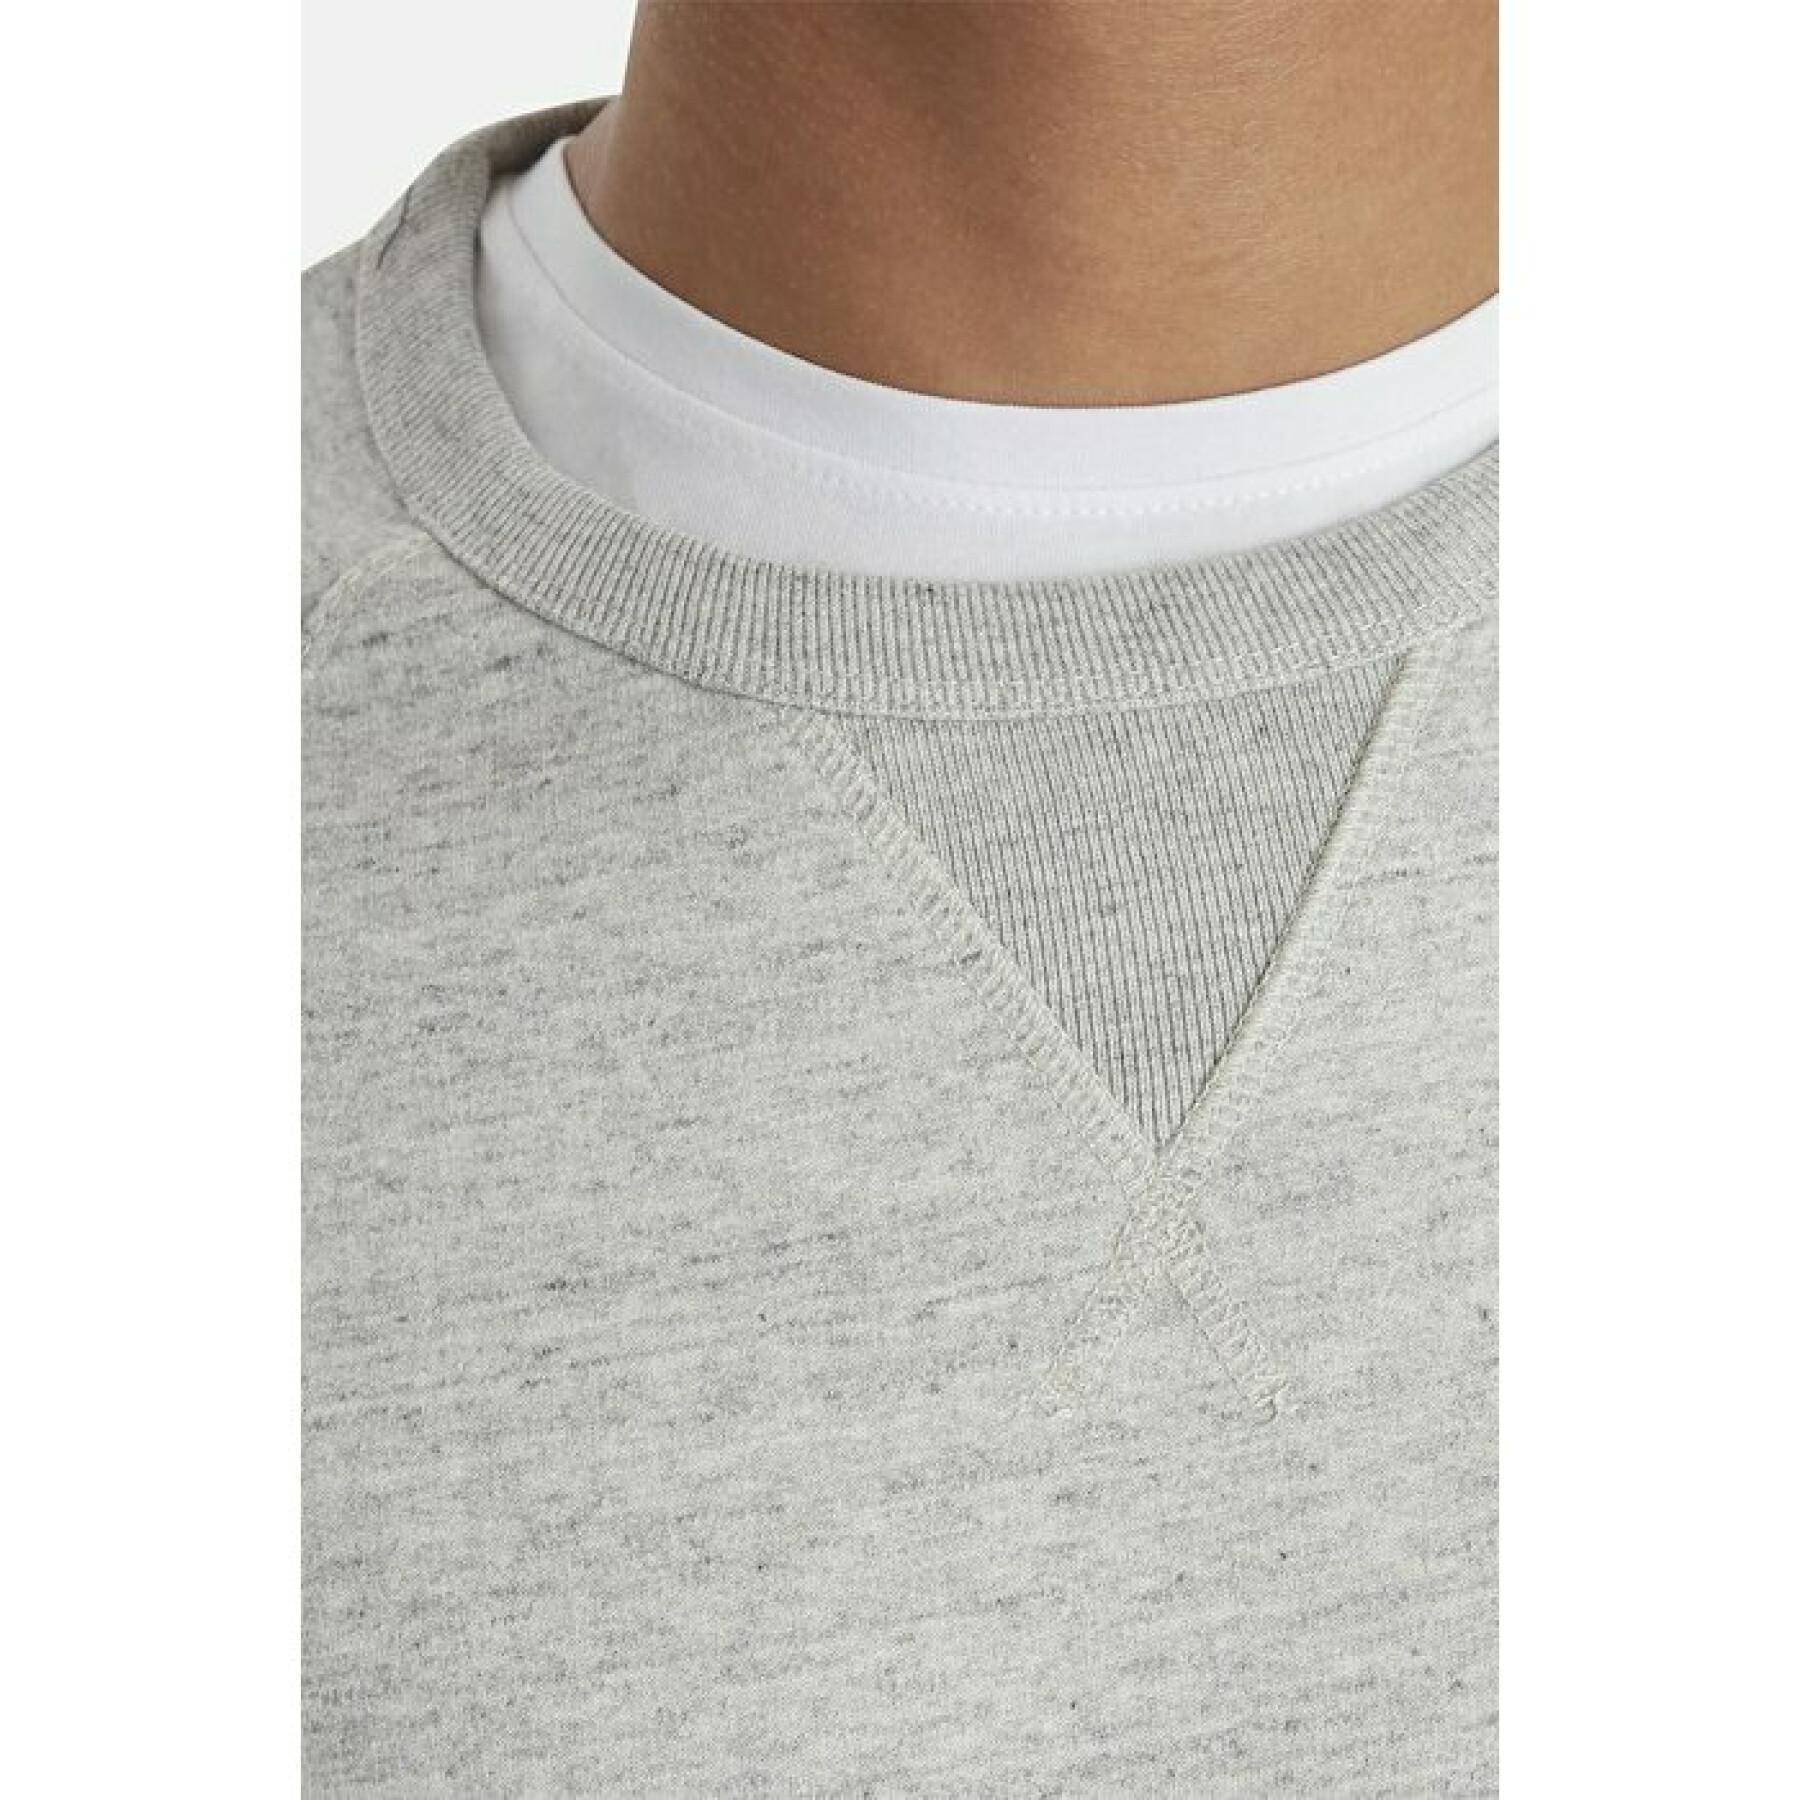 Sweatshirt round neck Blend bhalton